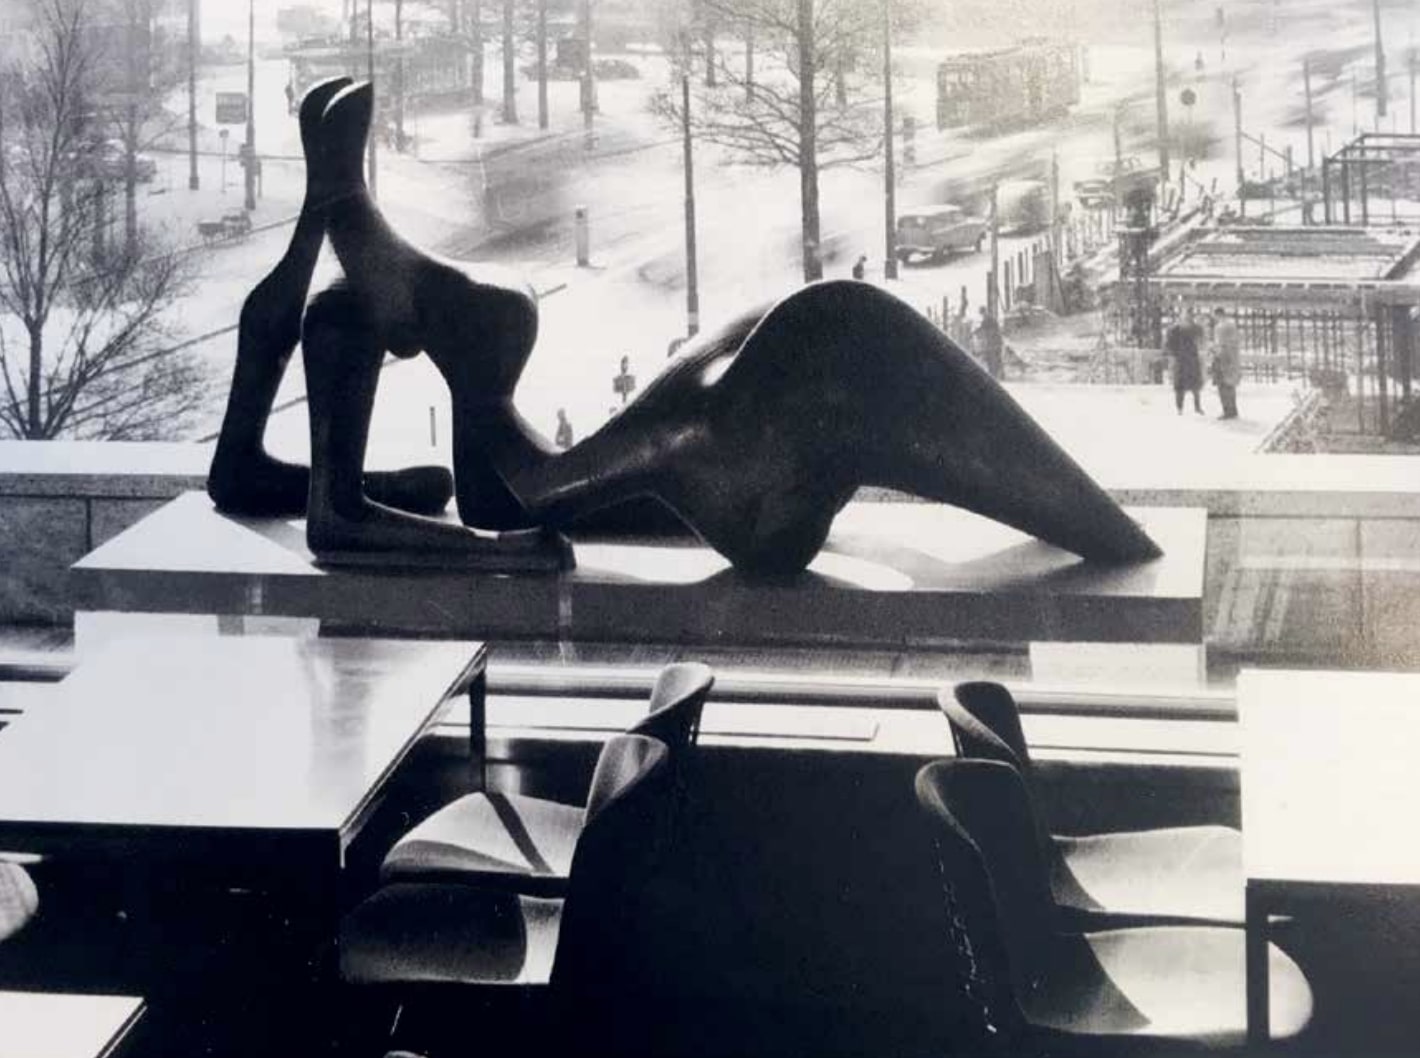 Henri Moore 1957-ben készült De liggende vrouw (A fekvő nő) című szobra a rotterdami Bijenkorf étterem ablaka előtt, archív fotó